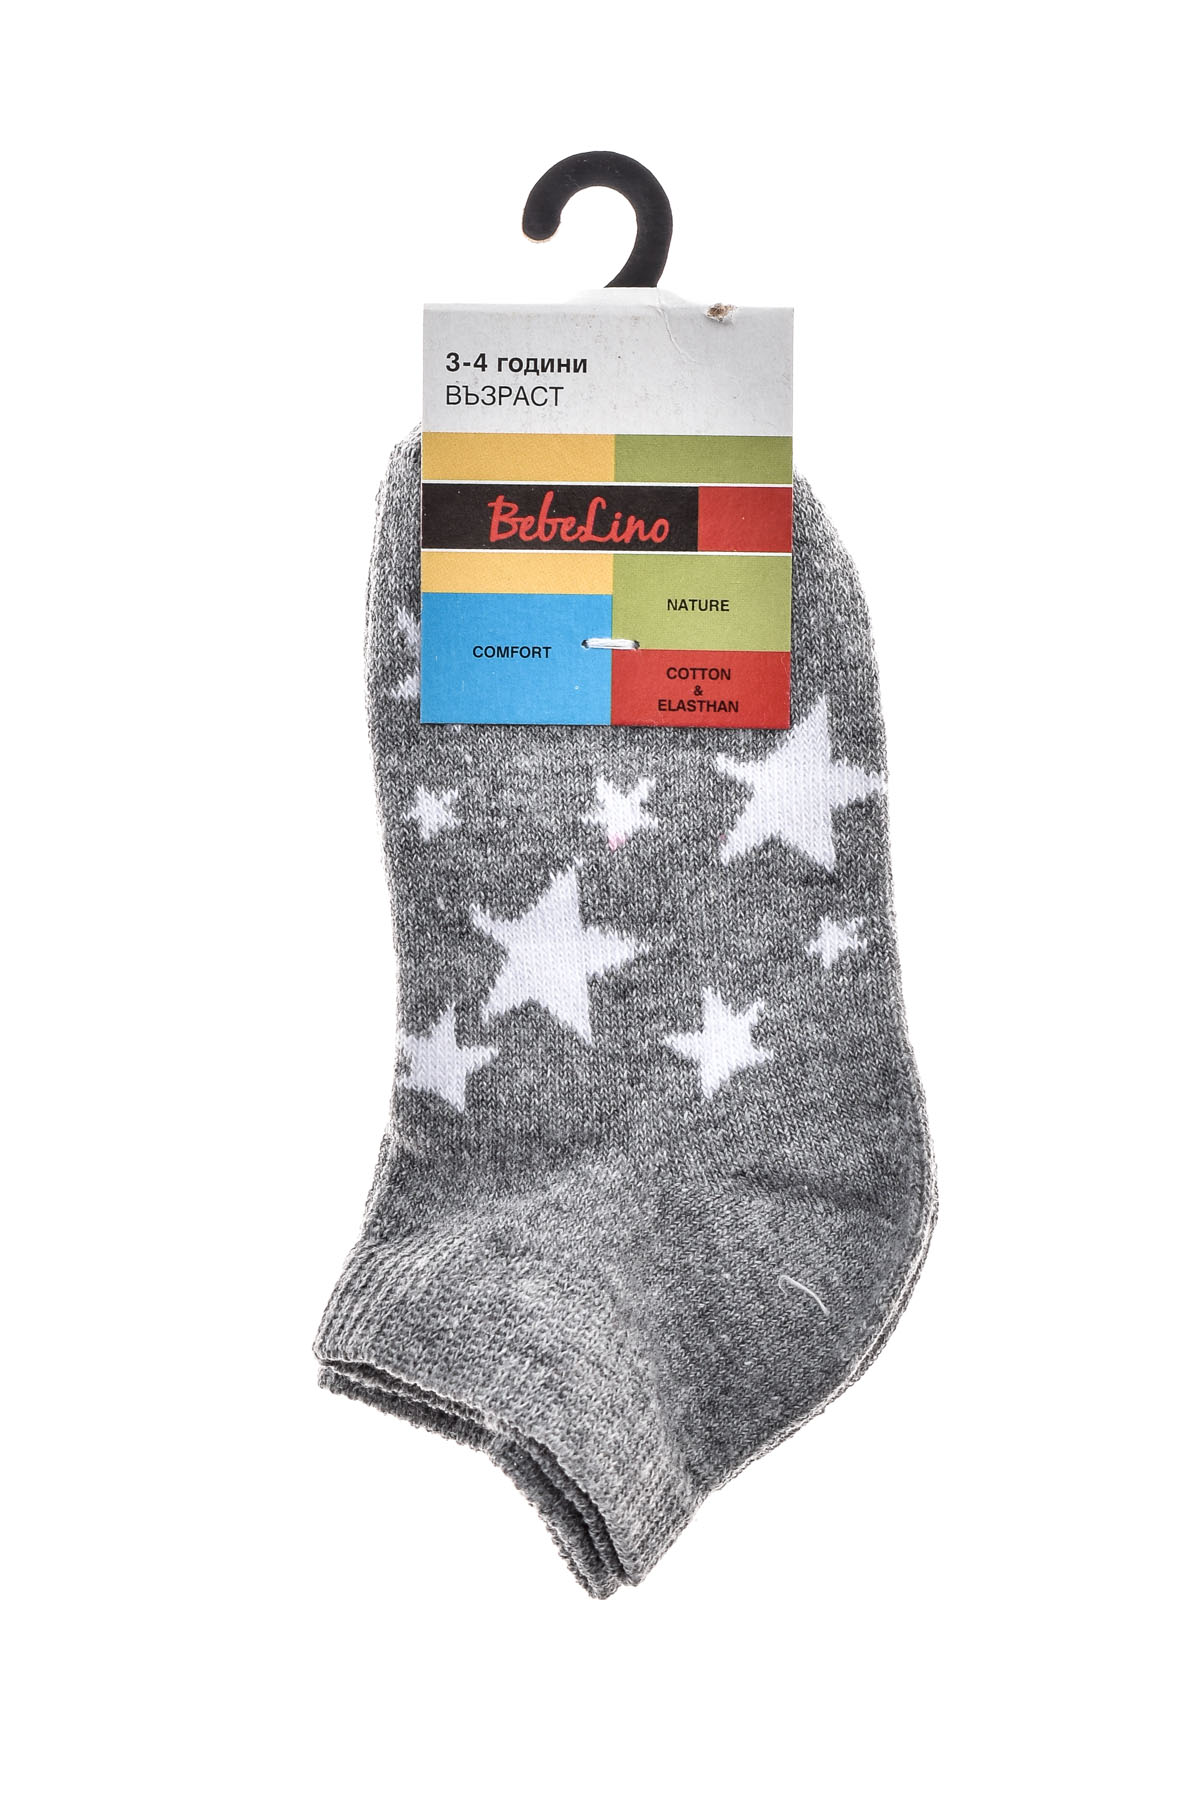 Kids' Socks - BebeLino - 1